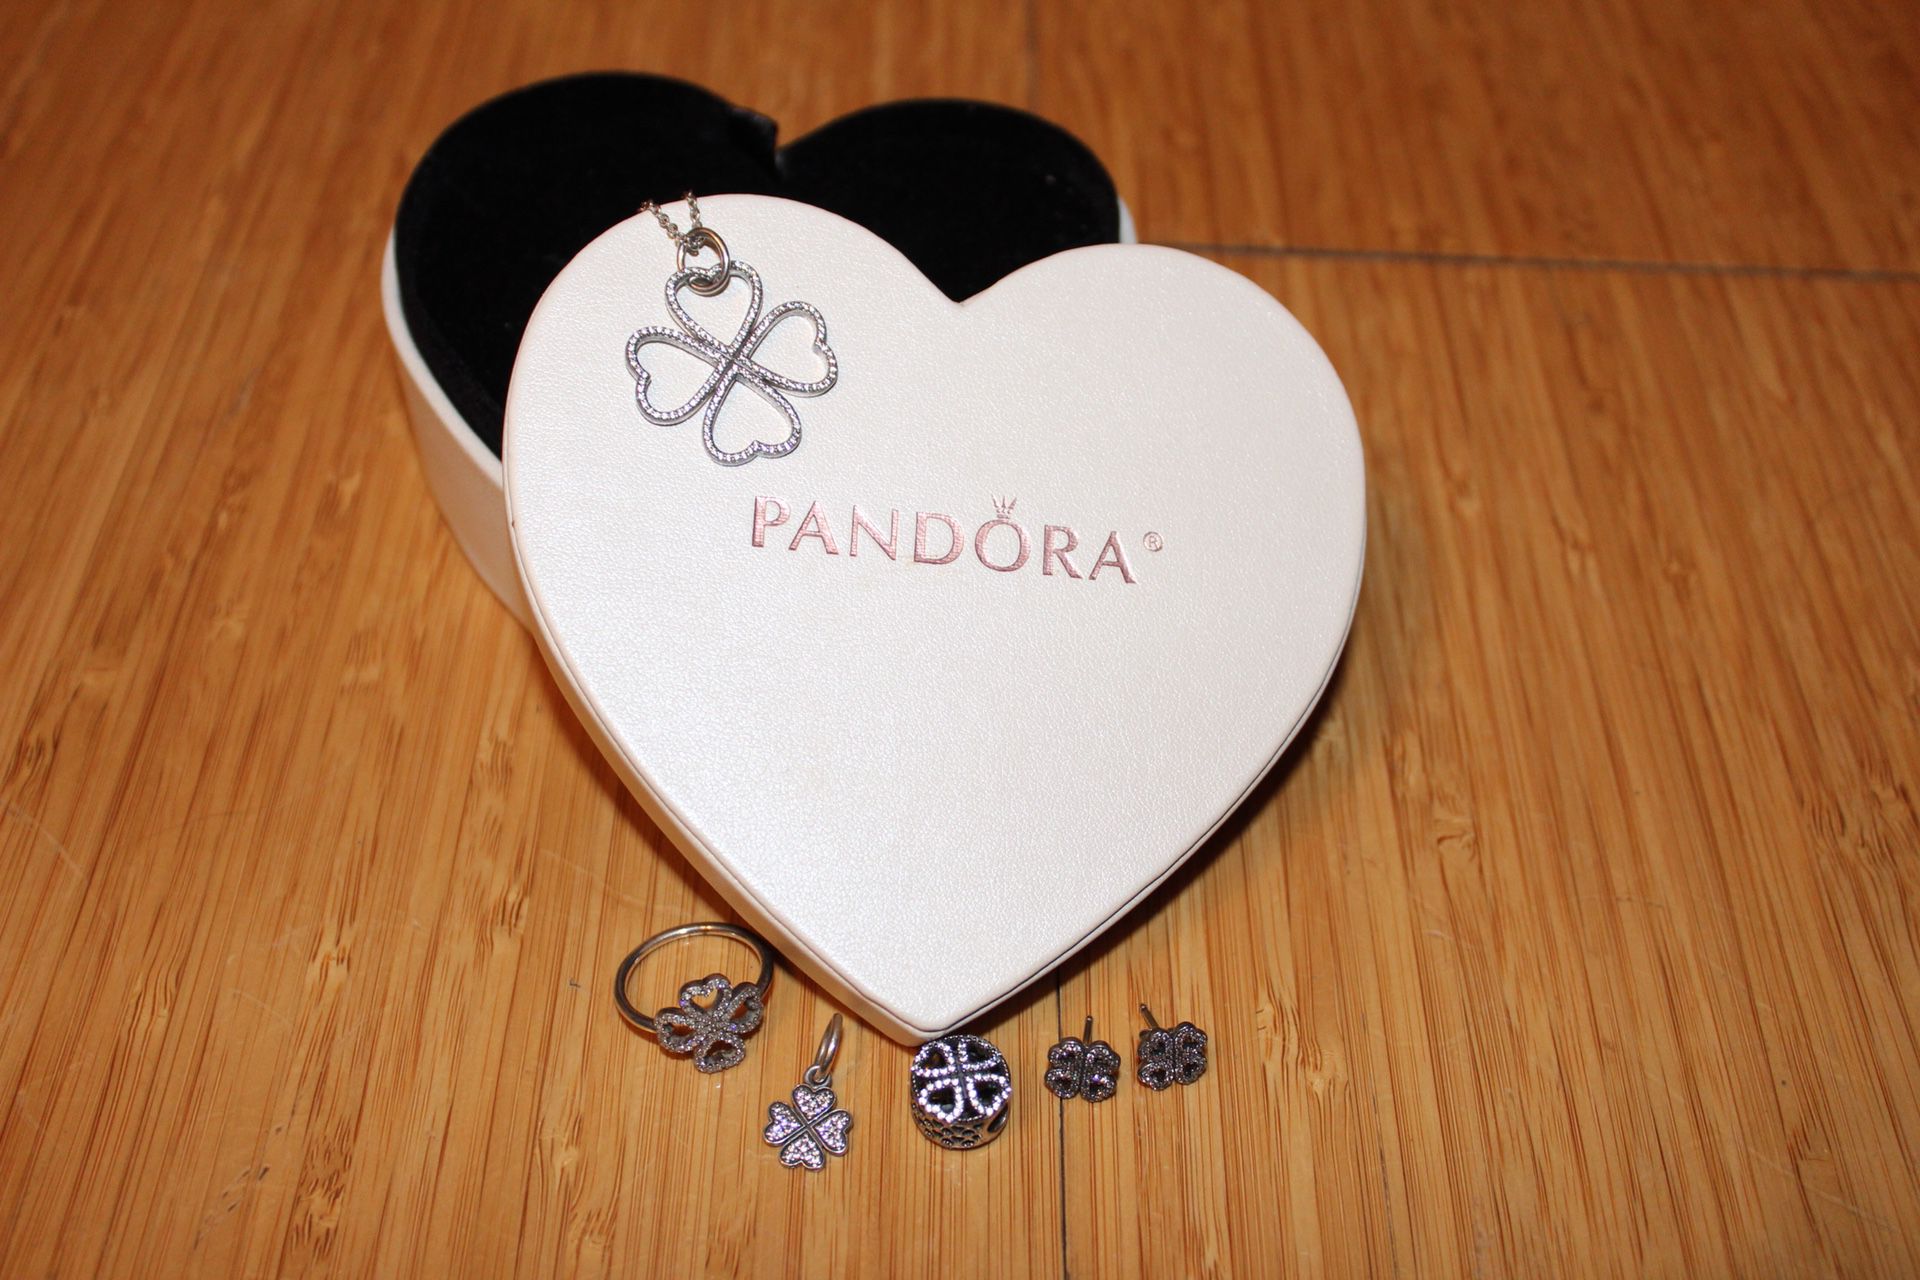 Pandora clover collection